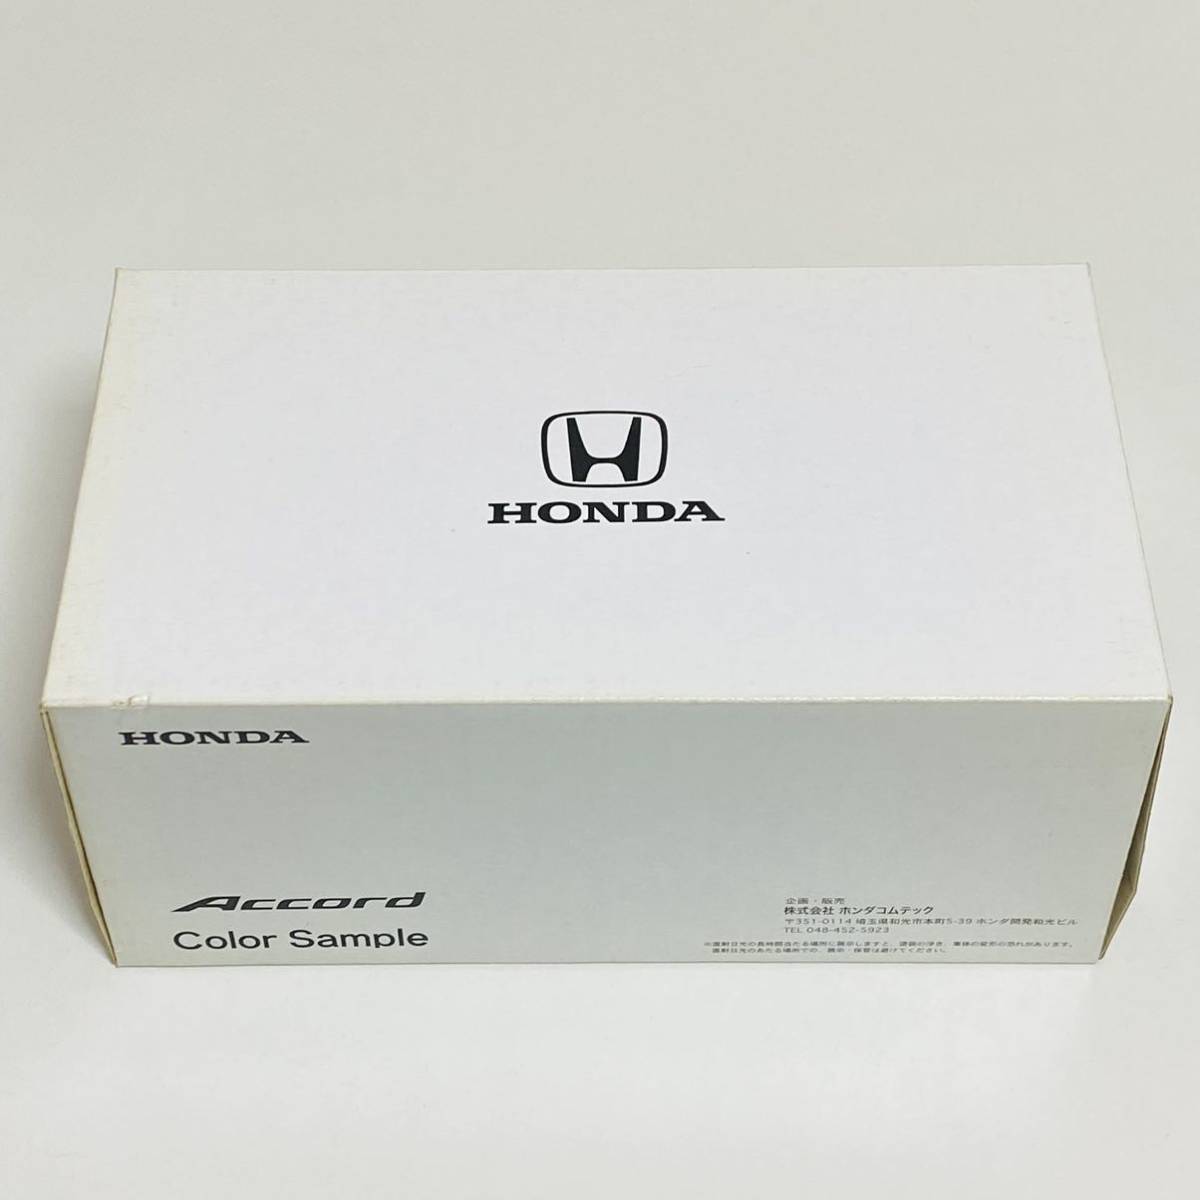 【美品】HONDA ホンダ Accord アコード カラーサンプル ブランシルバーメタリック SC17BS ミニカー モデルカー